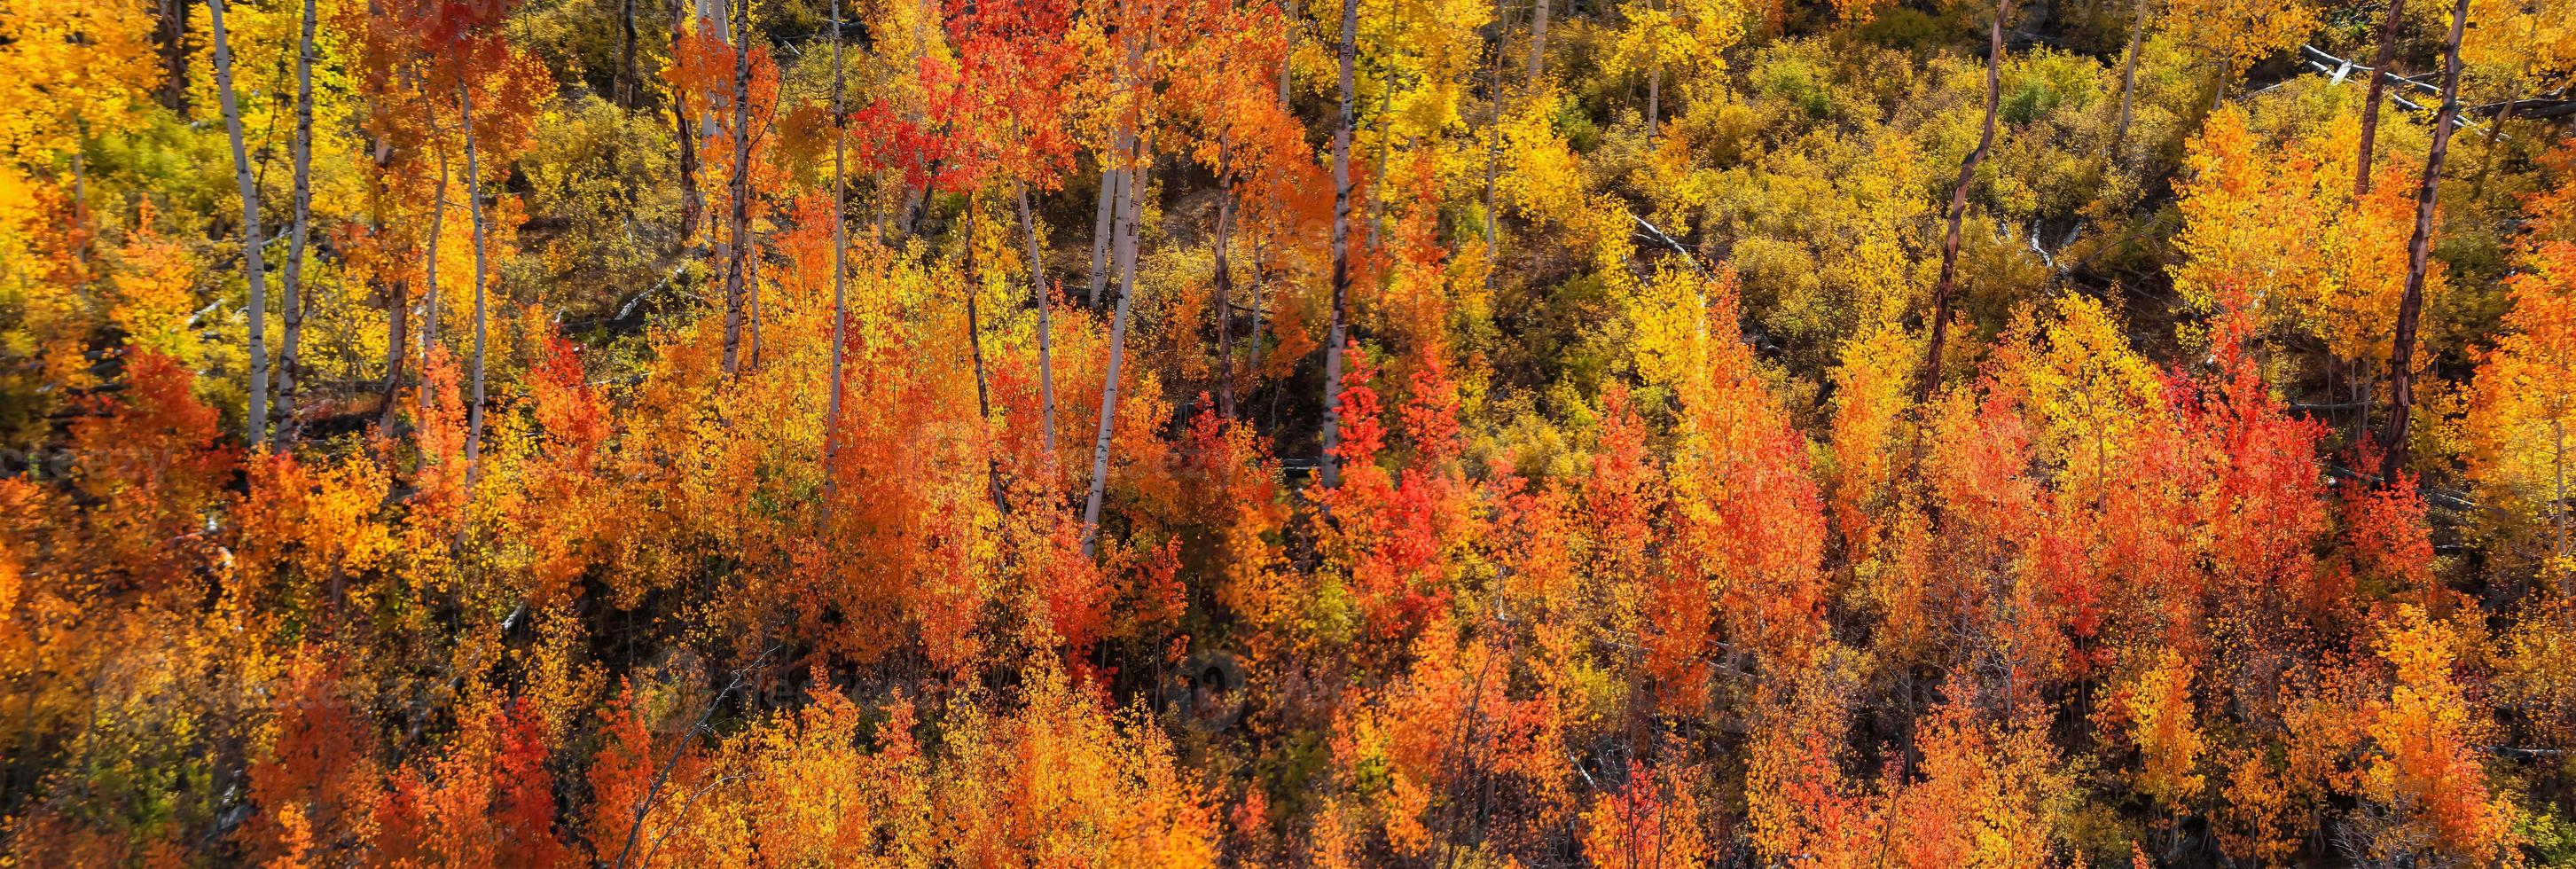 vista panoramica di alberi colorati di pioppo tremulo e cotone in colorado foto